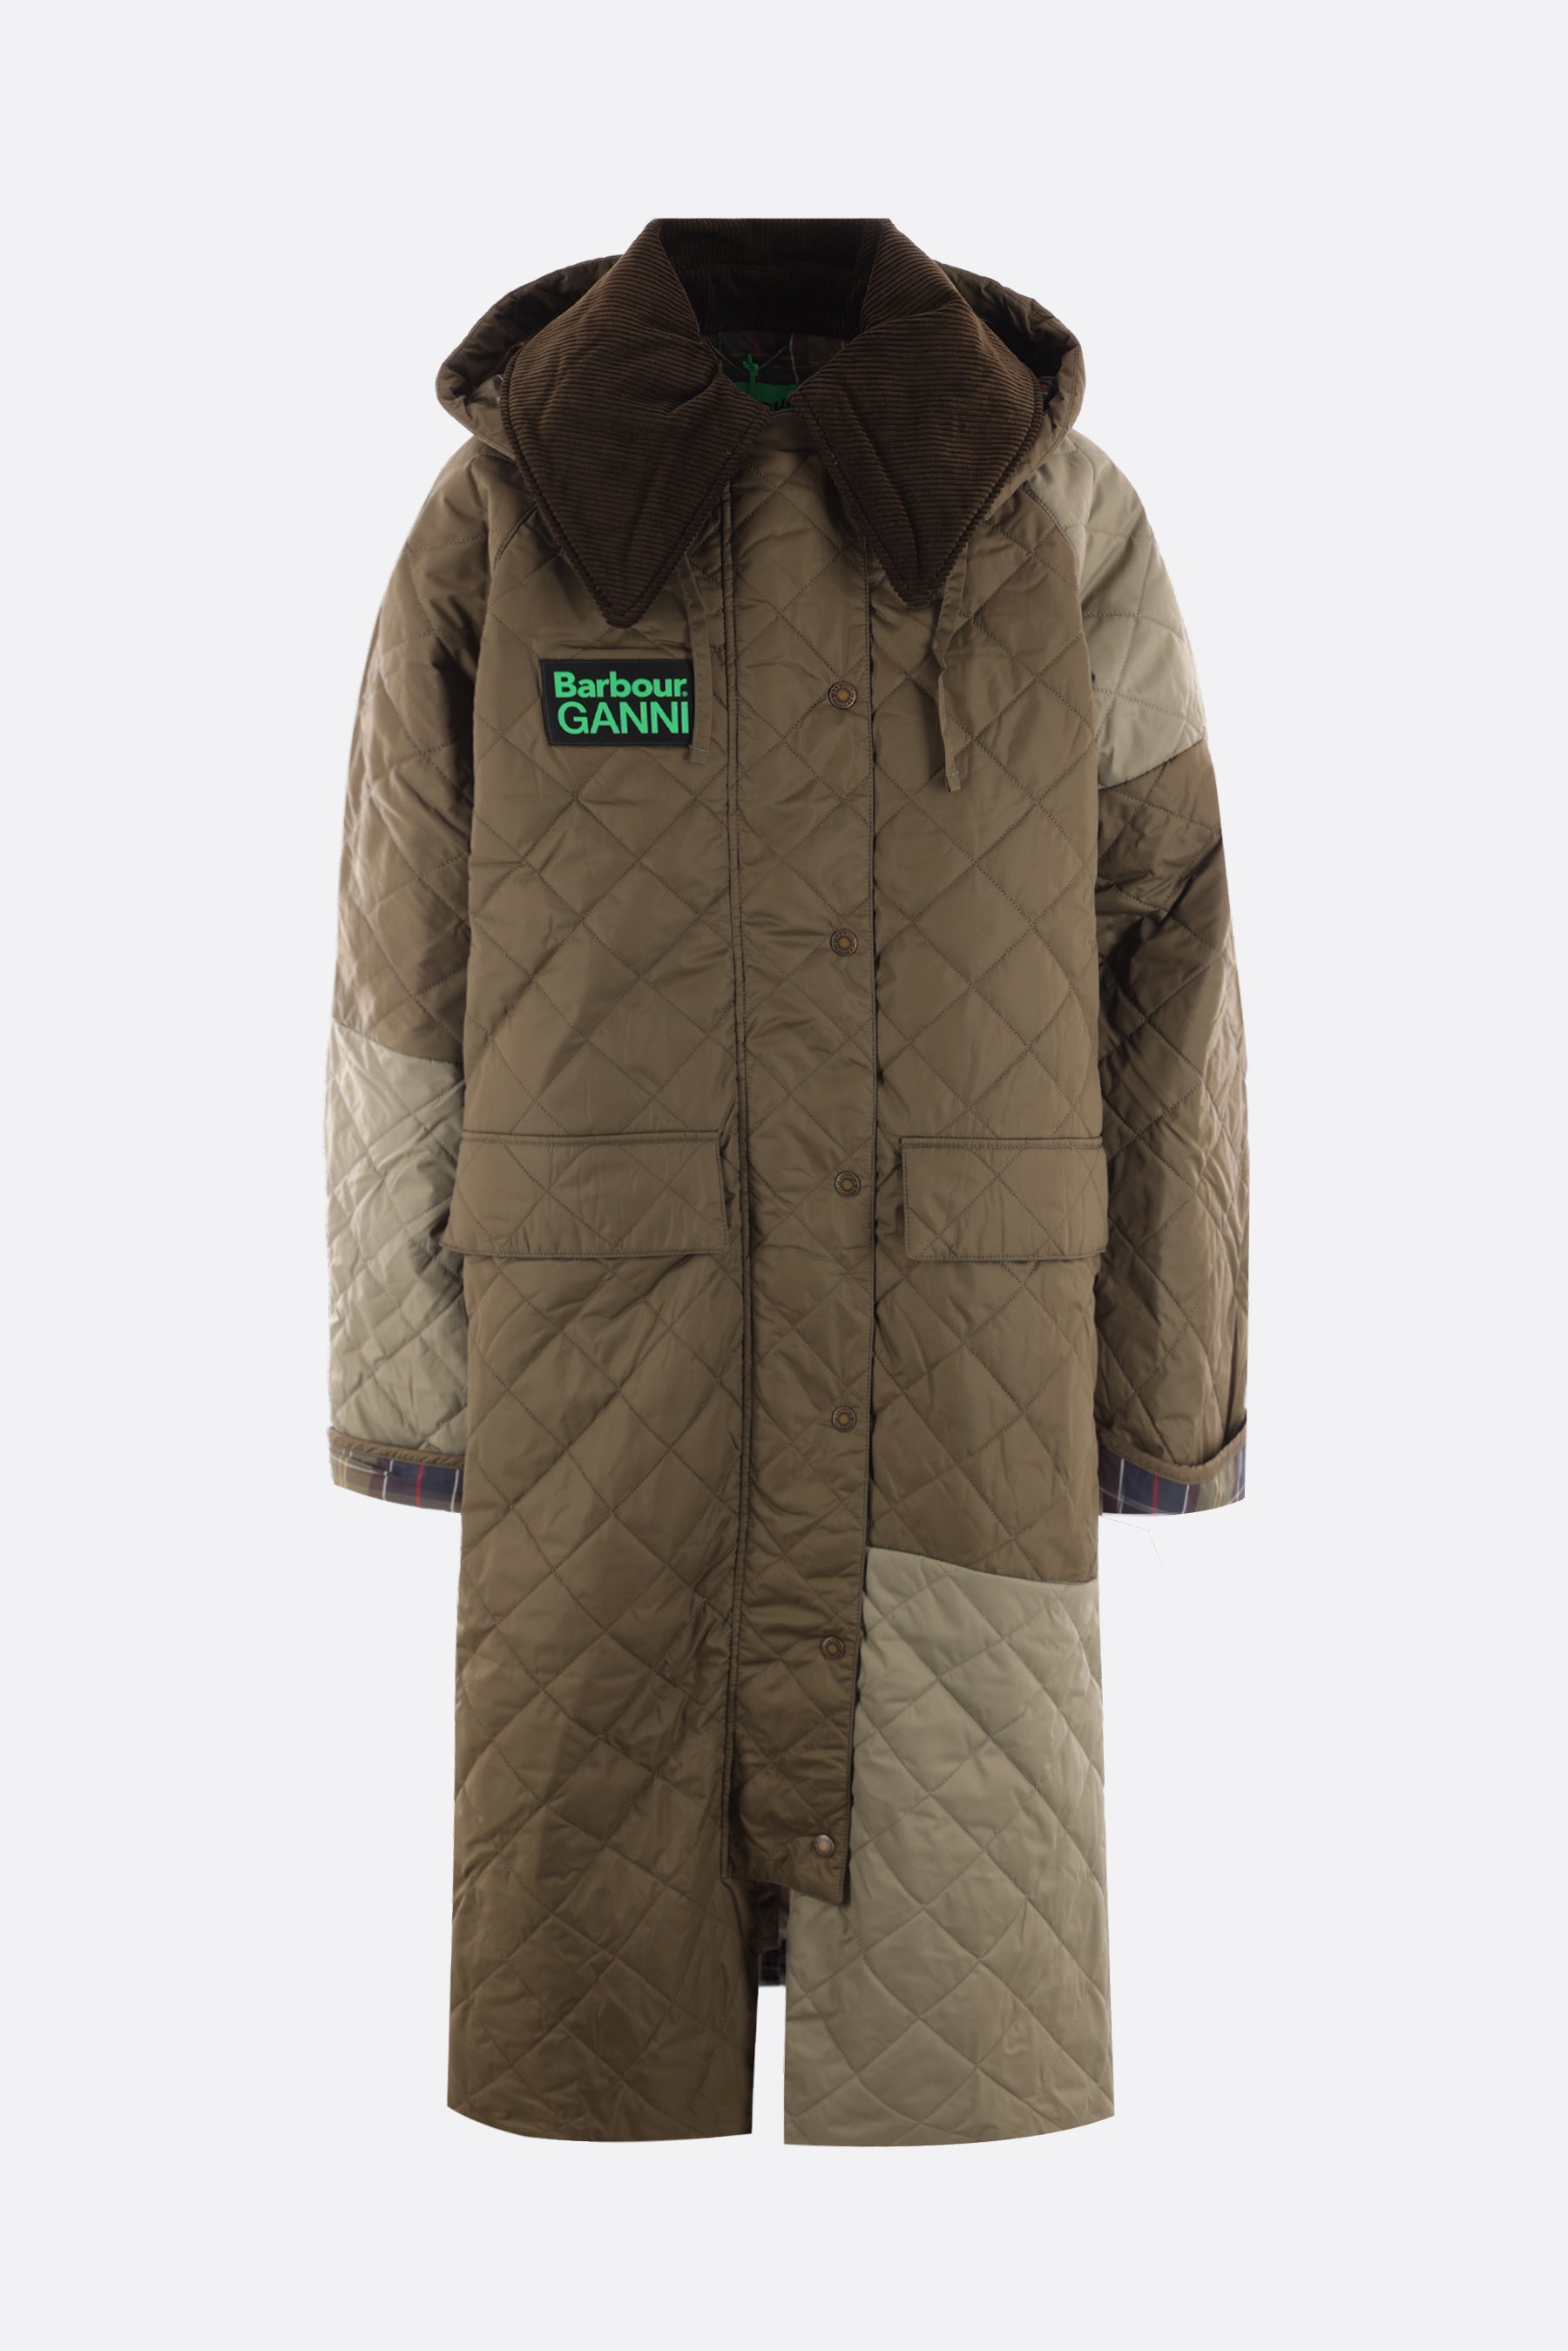 Burghley recycled nylon padded jacket